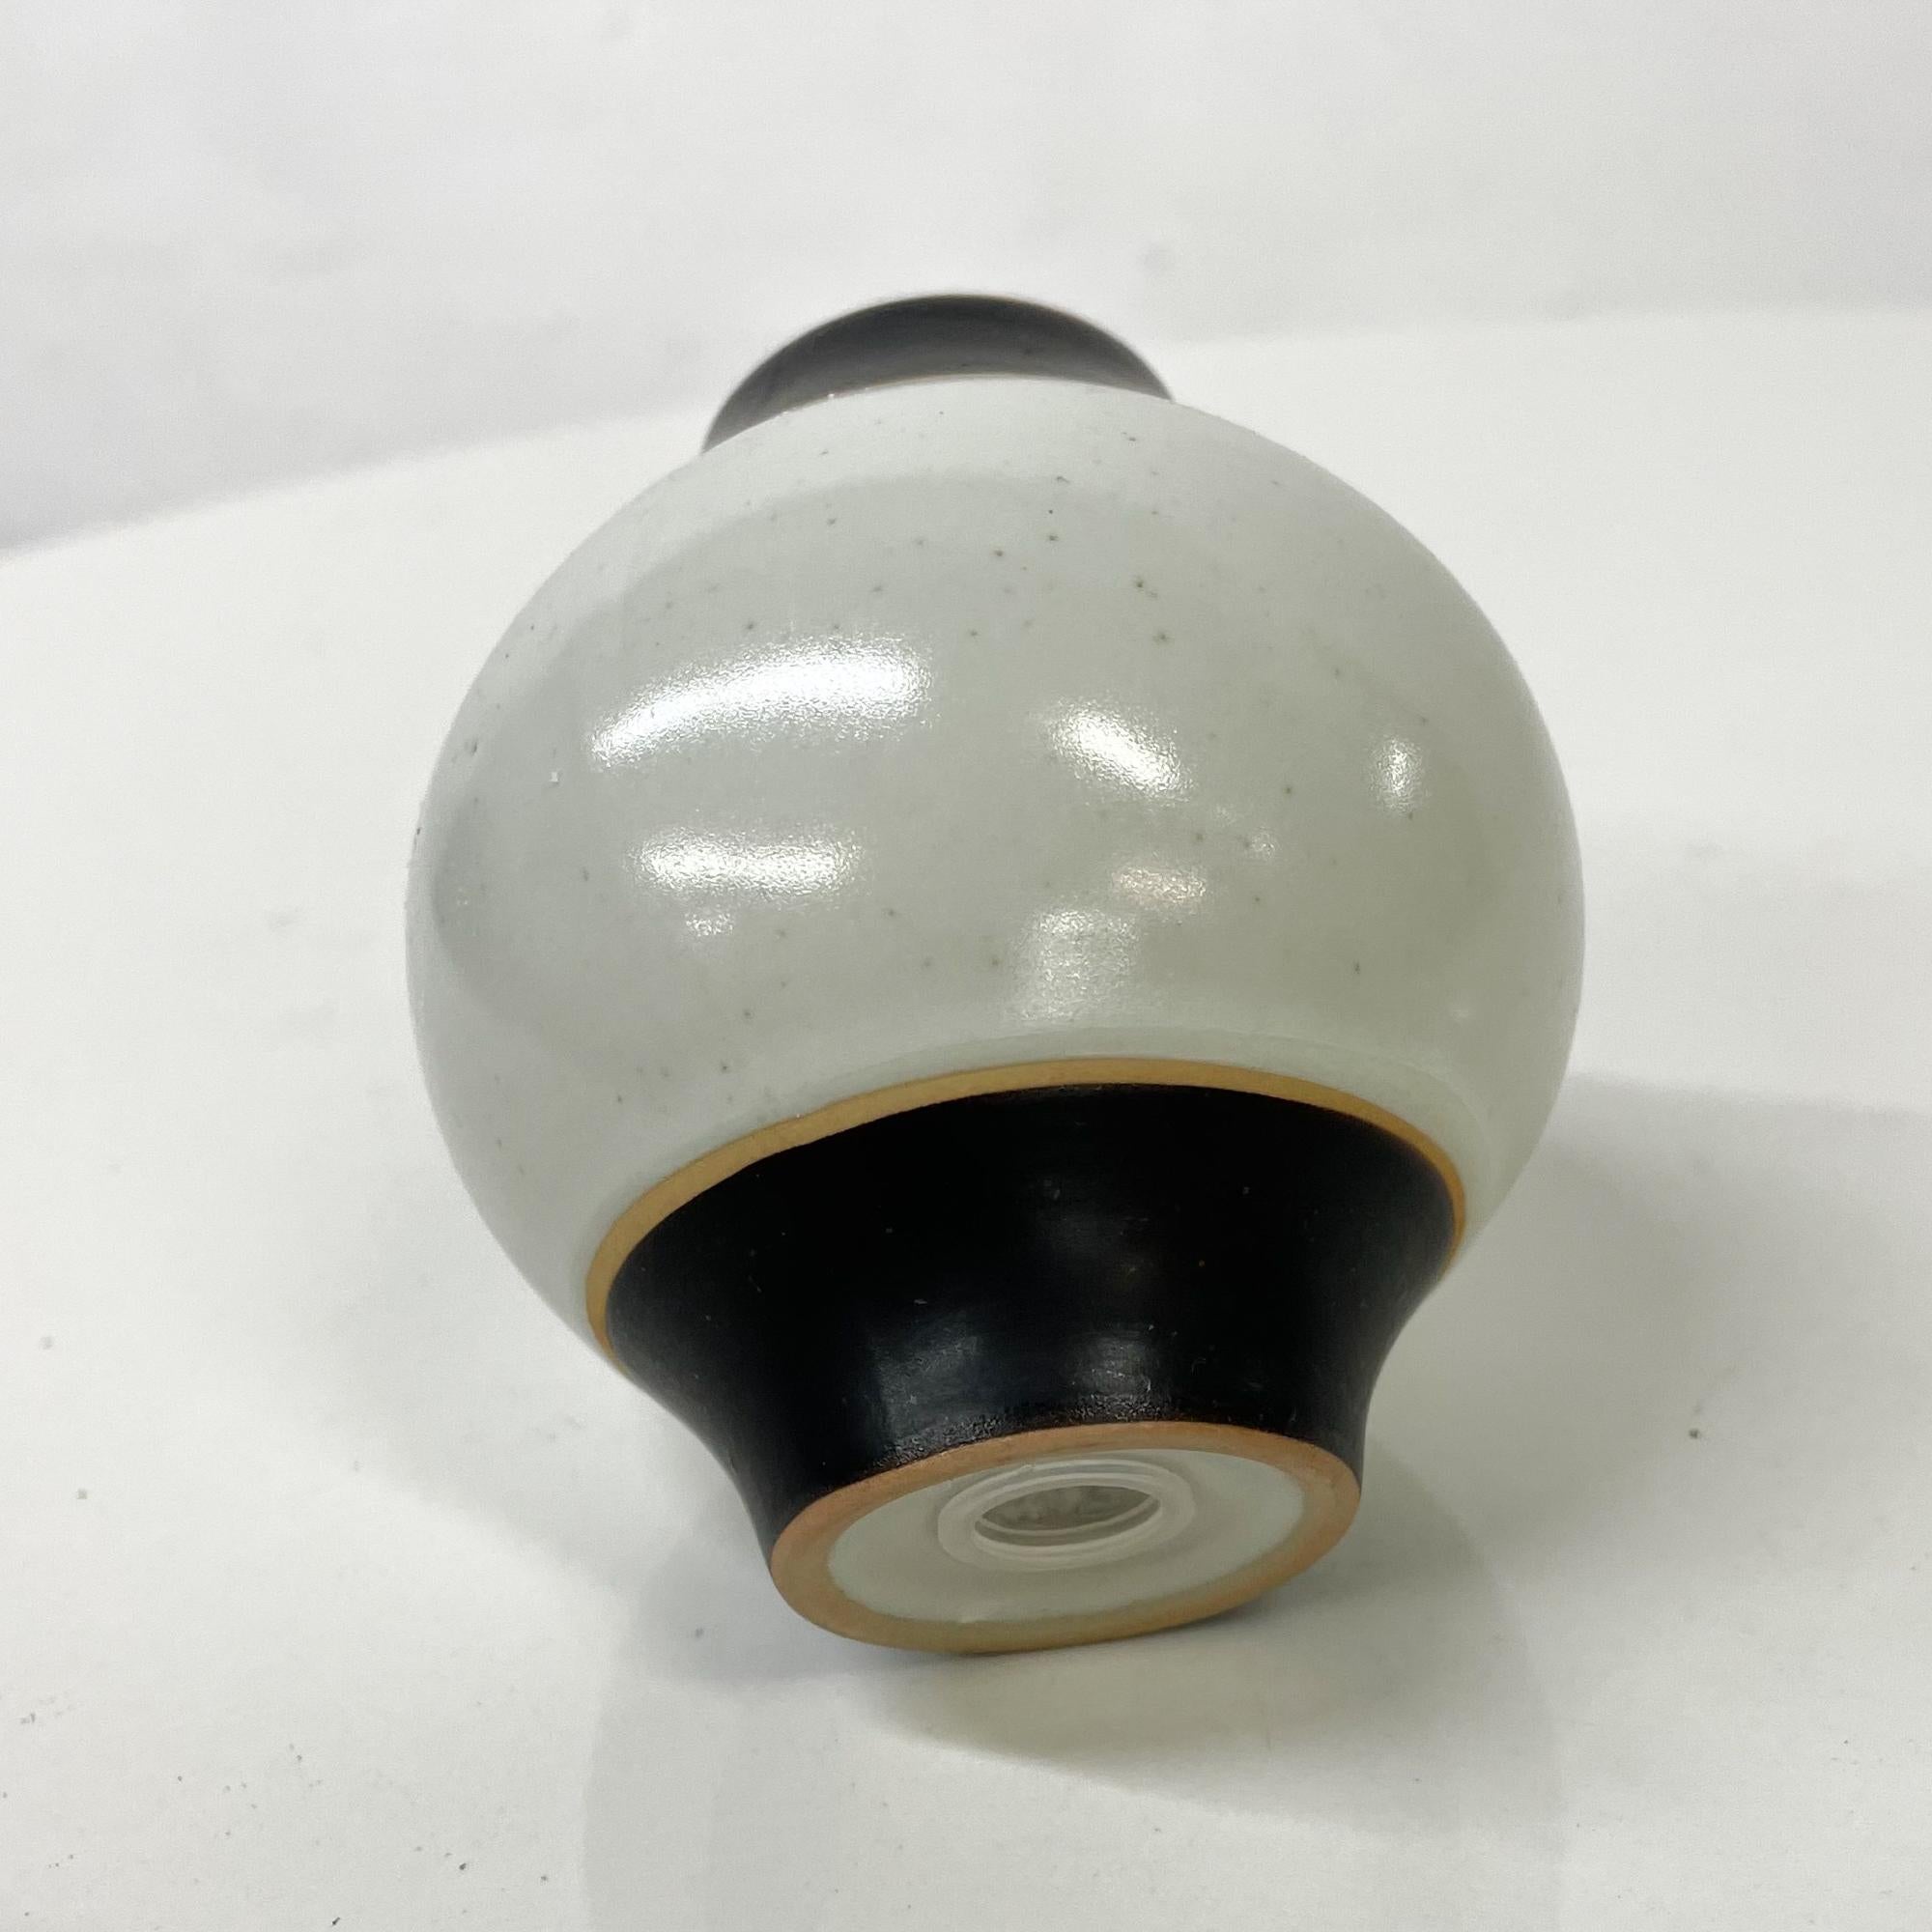 1980s Modernist Pottery Salt or Pepper Shaker Post Modern Design Black Gray 6